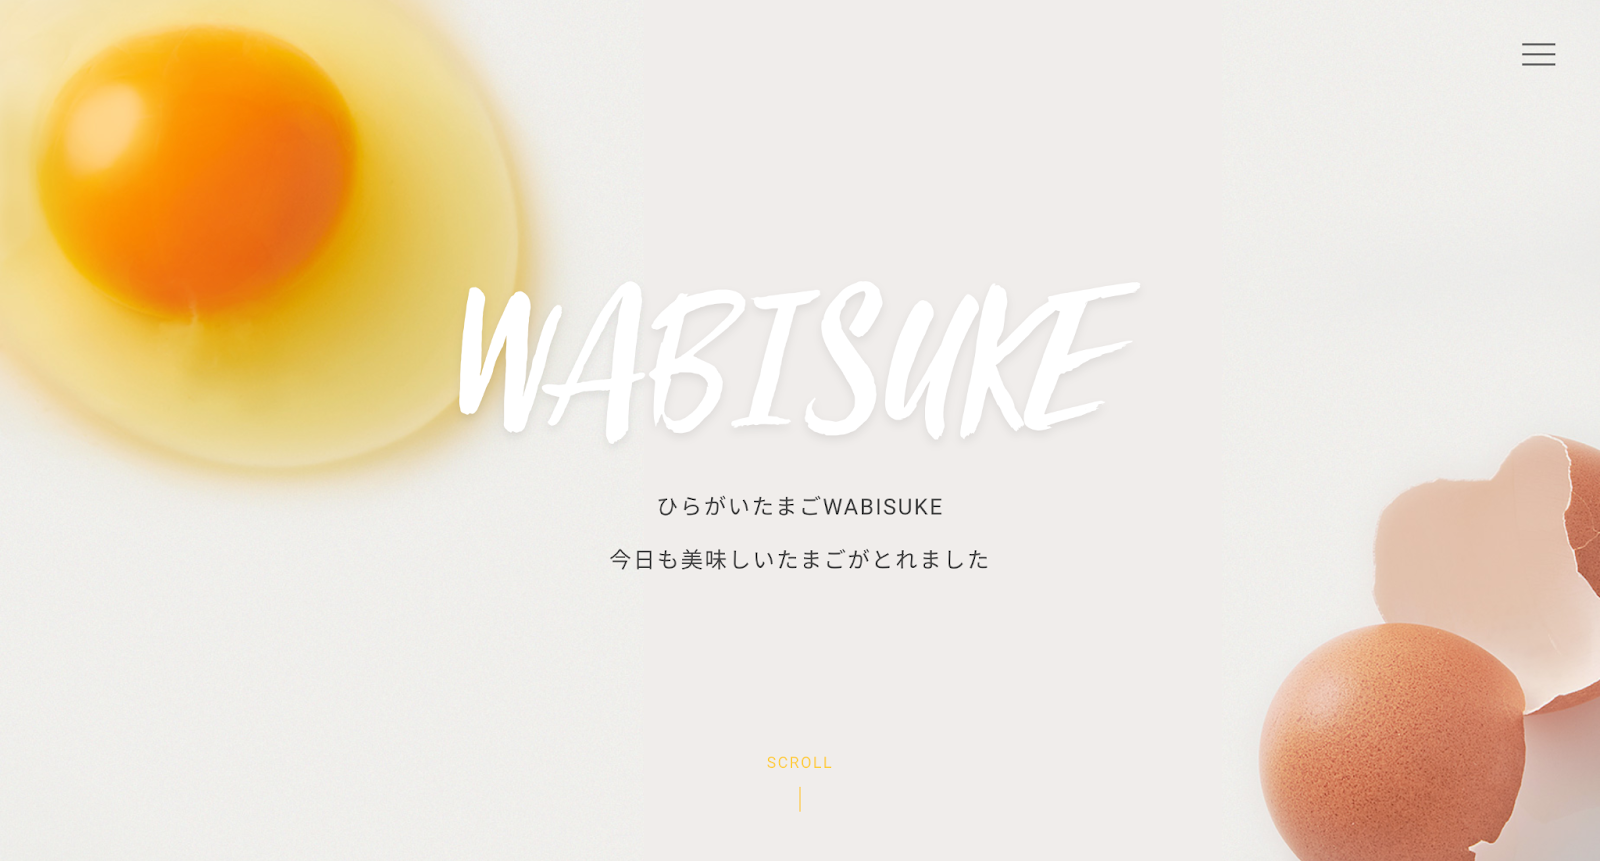 株式会社WABISUKE